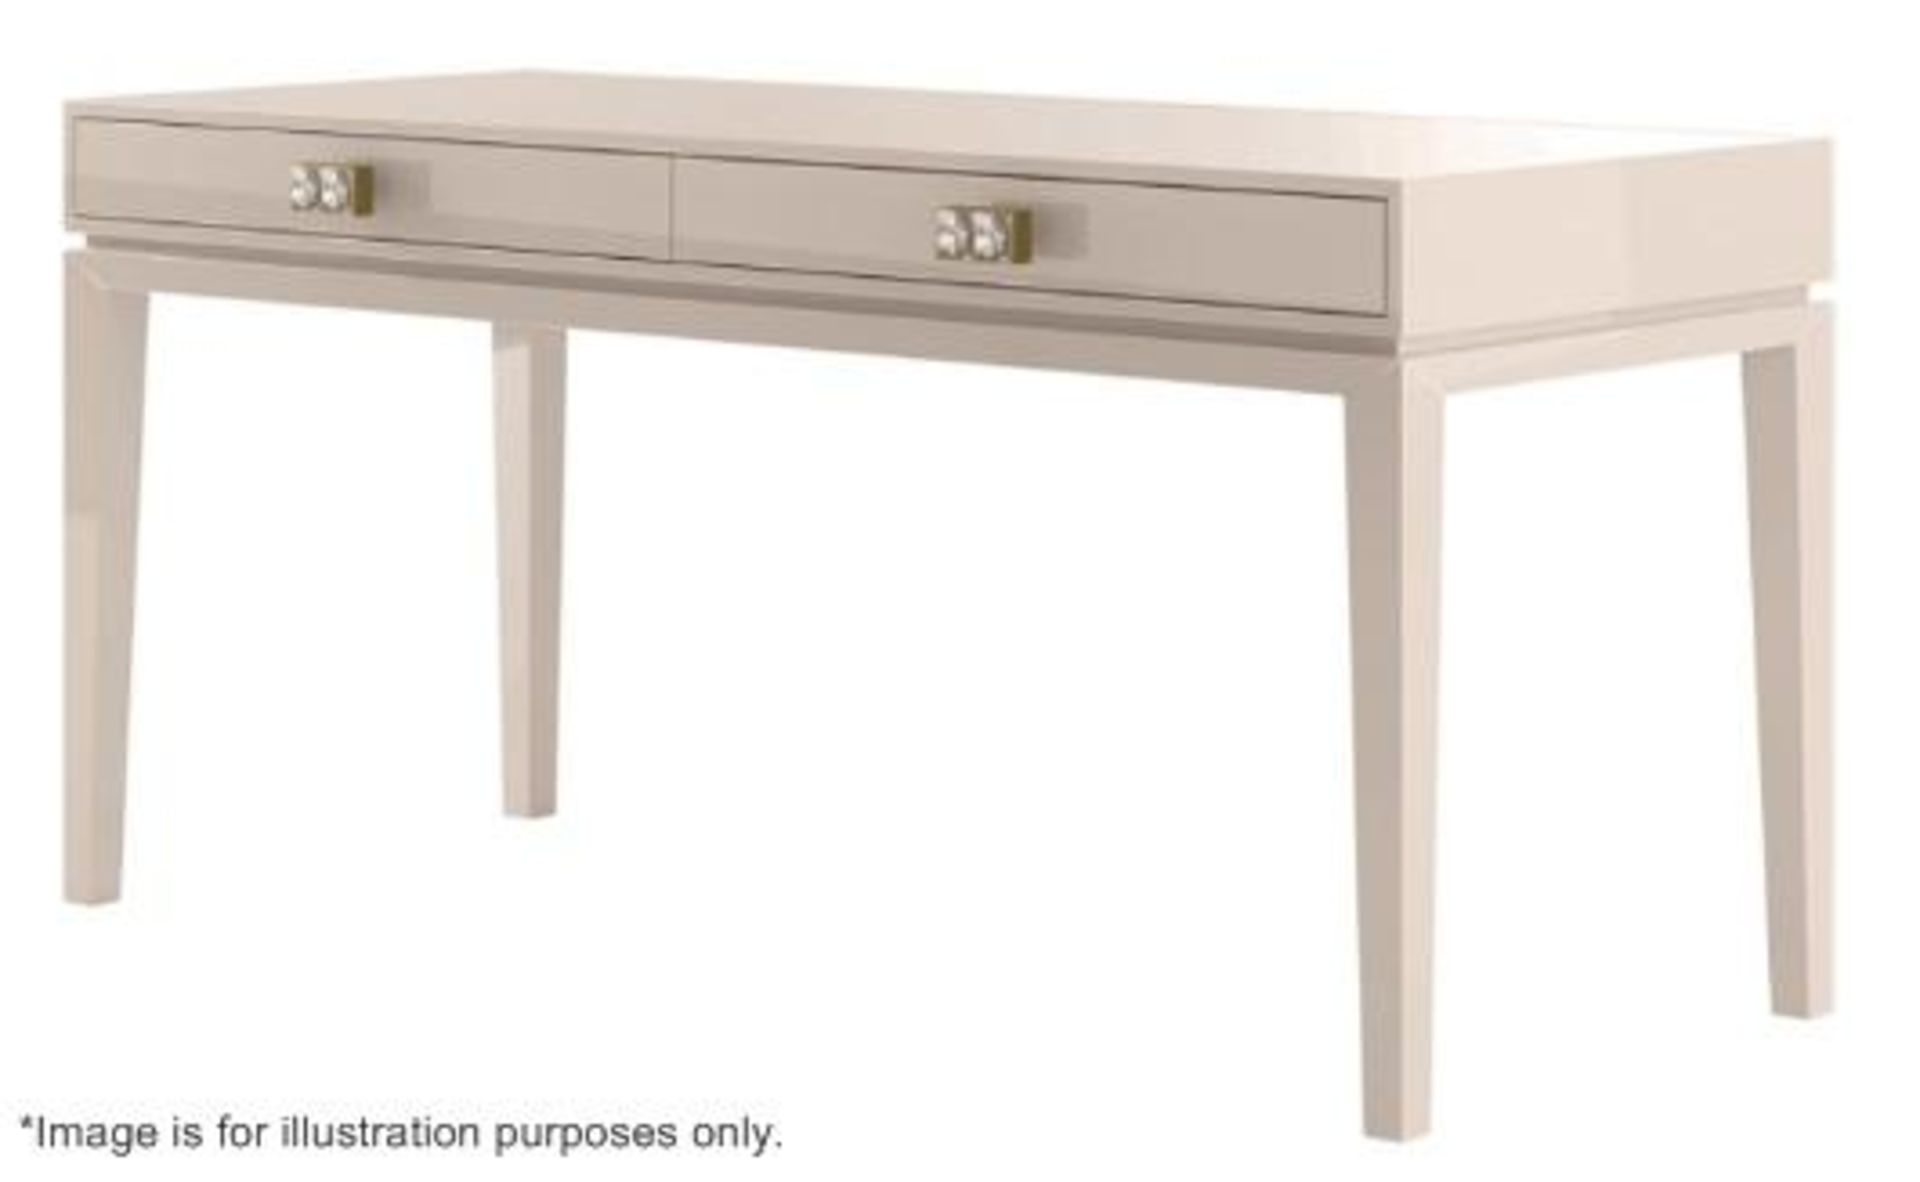 1 x FRATO 'Buzios' Designer Desk - Made In Italy - 160 x D65 x H78cm - Original Price £2,759